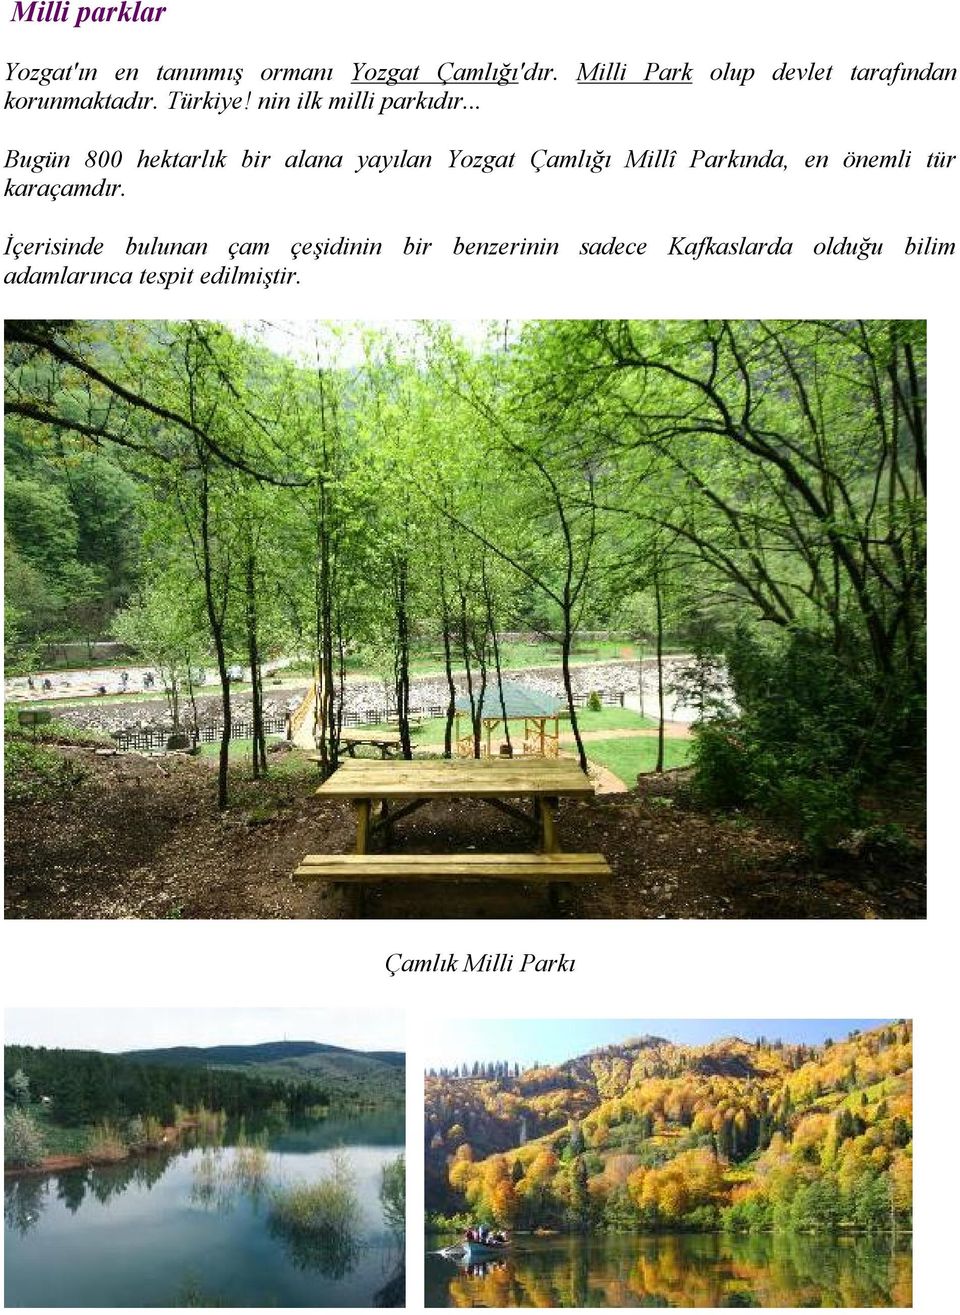 .. Bugün 800 hektarlık bir alana yayılan Yozgat Çamlığı Millî Parkında, en önemli tür